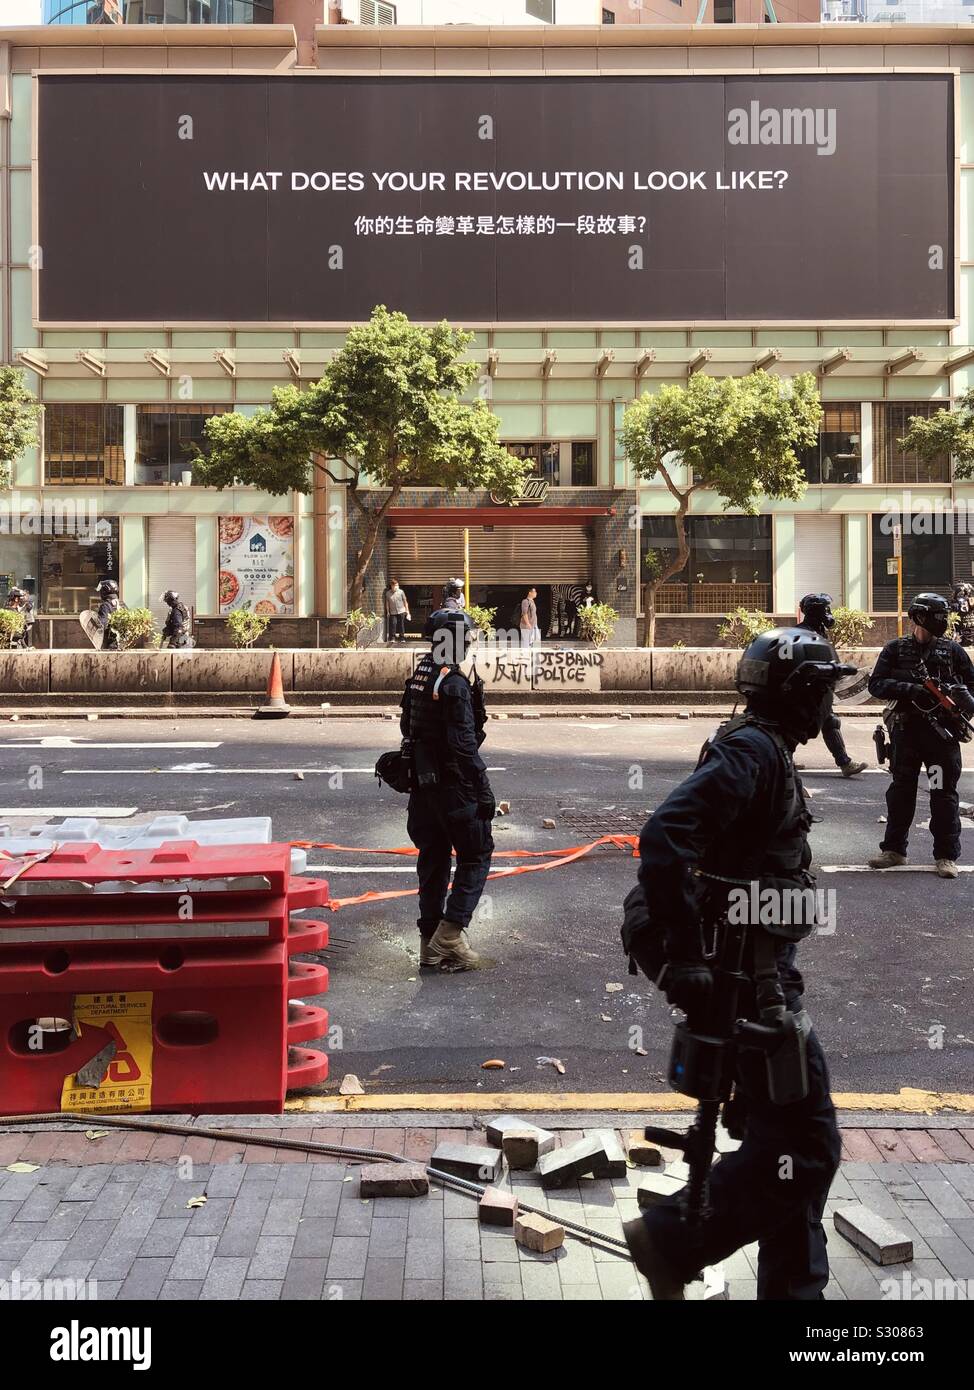 HongKong, Hong Kong - November, 2019: Riot police on street during protest in HongKong Stock Photo